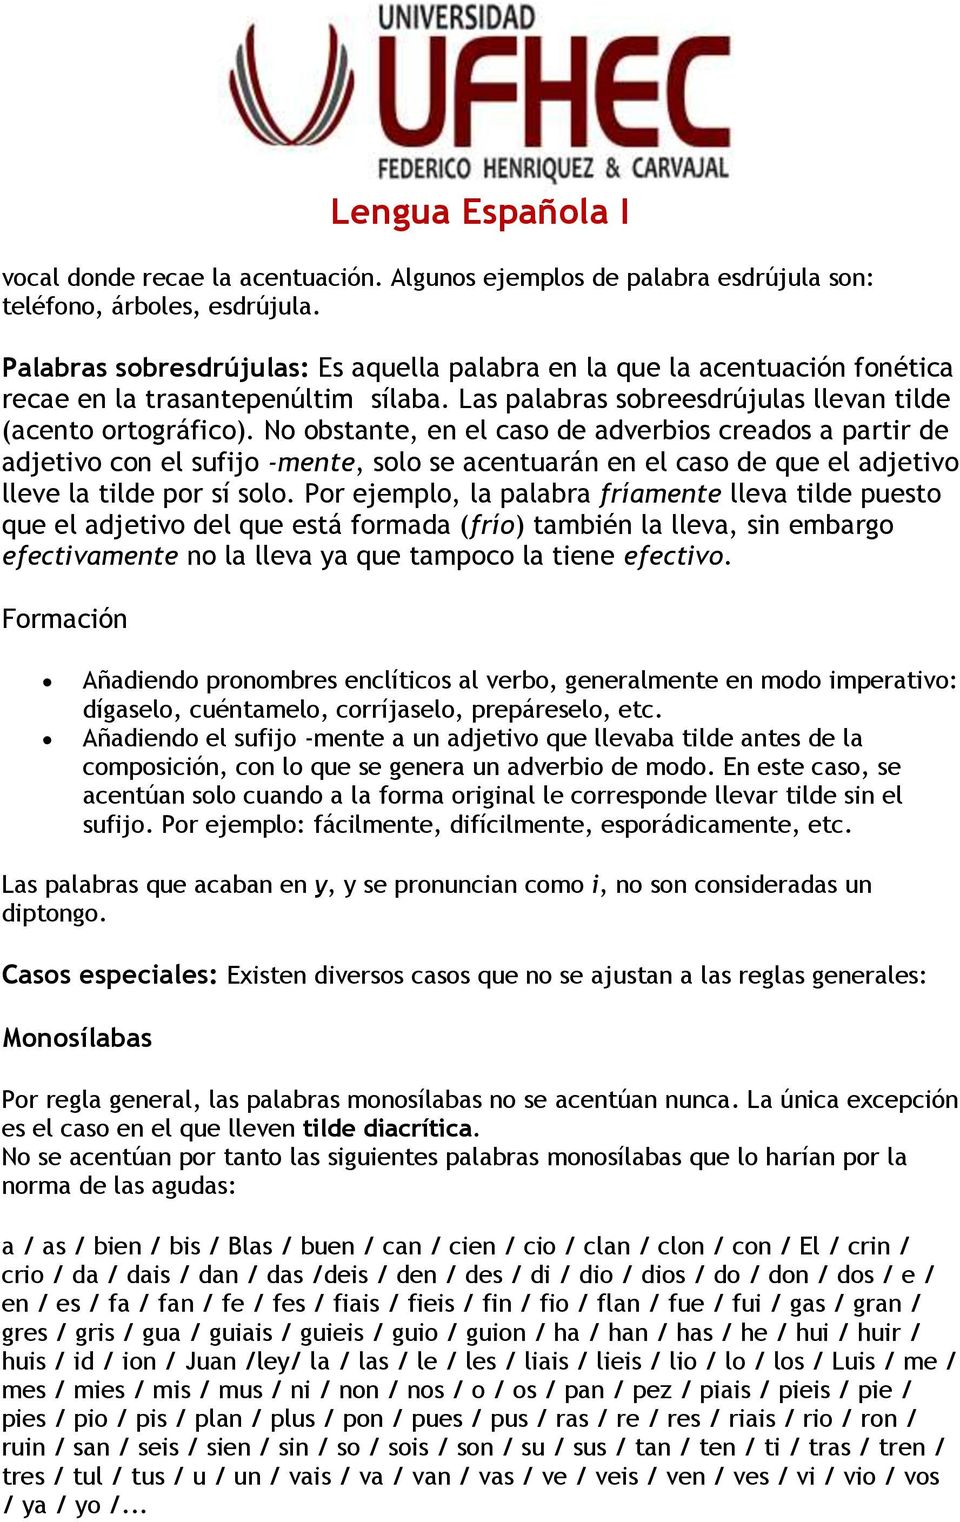 Lengua Española I. El acento castellano. Casos ordinarios y especiales -  PDF Free Download